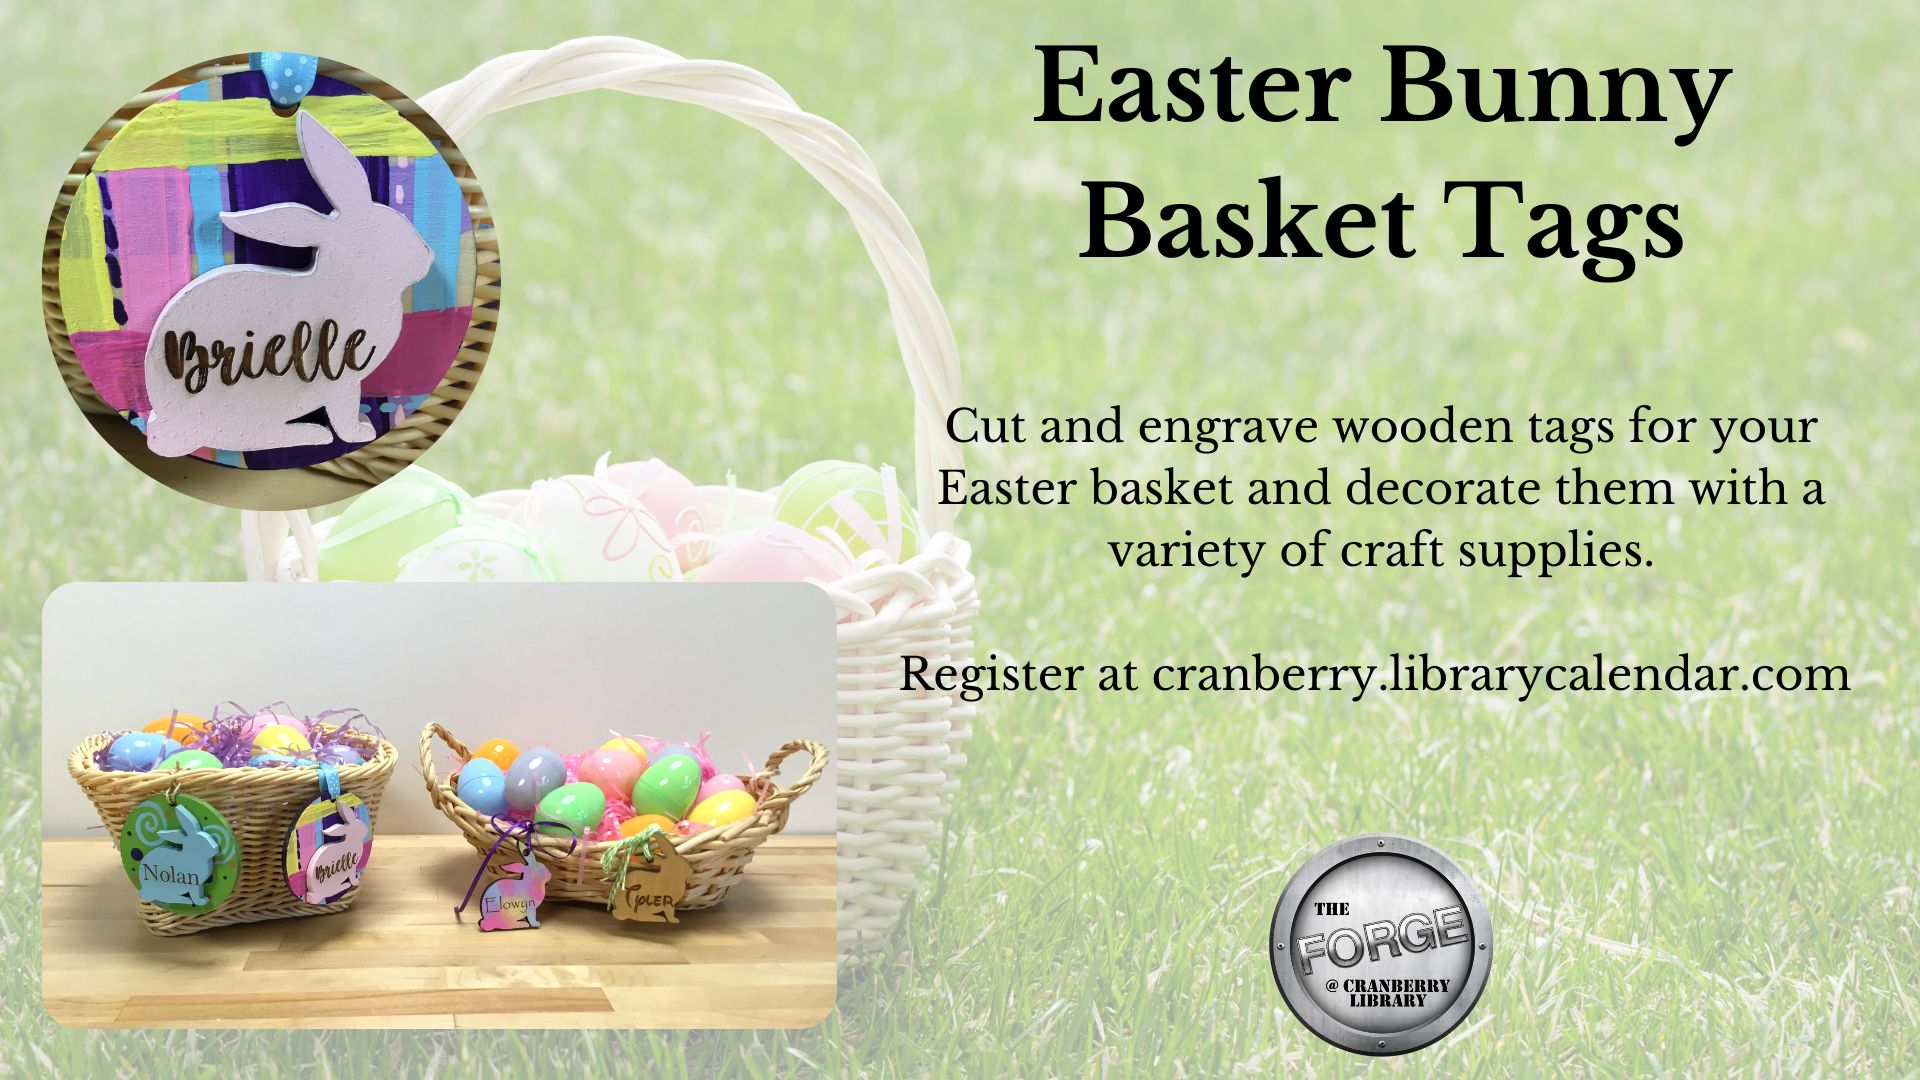 Flyer for Easter Bunny Basket Tags program